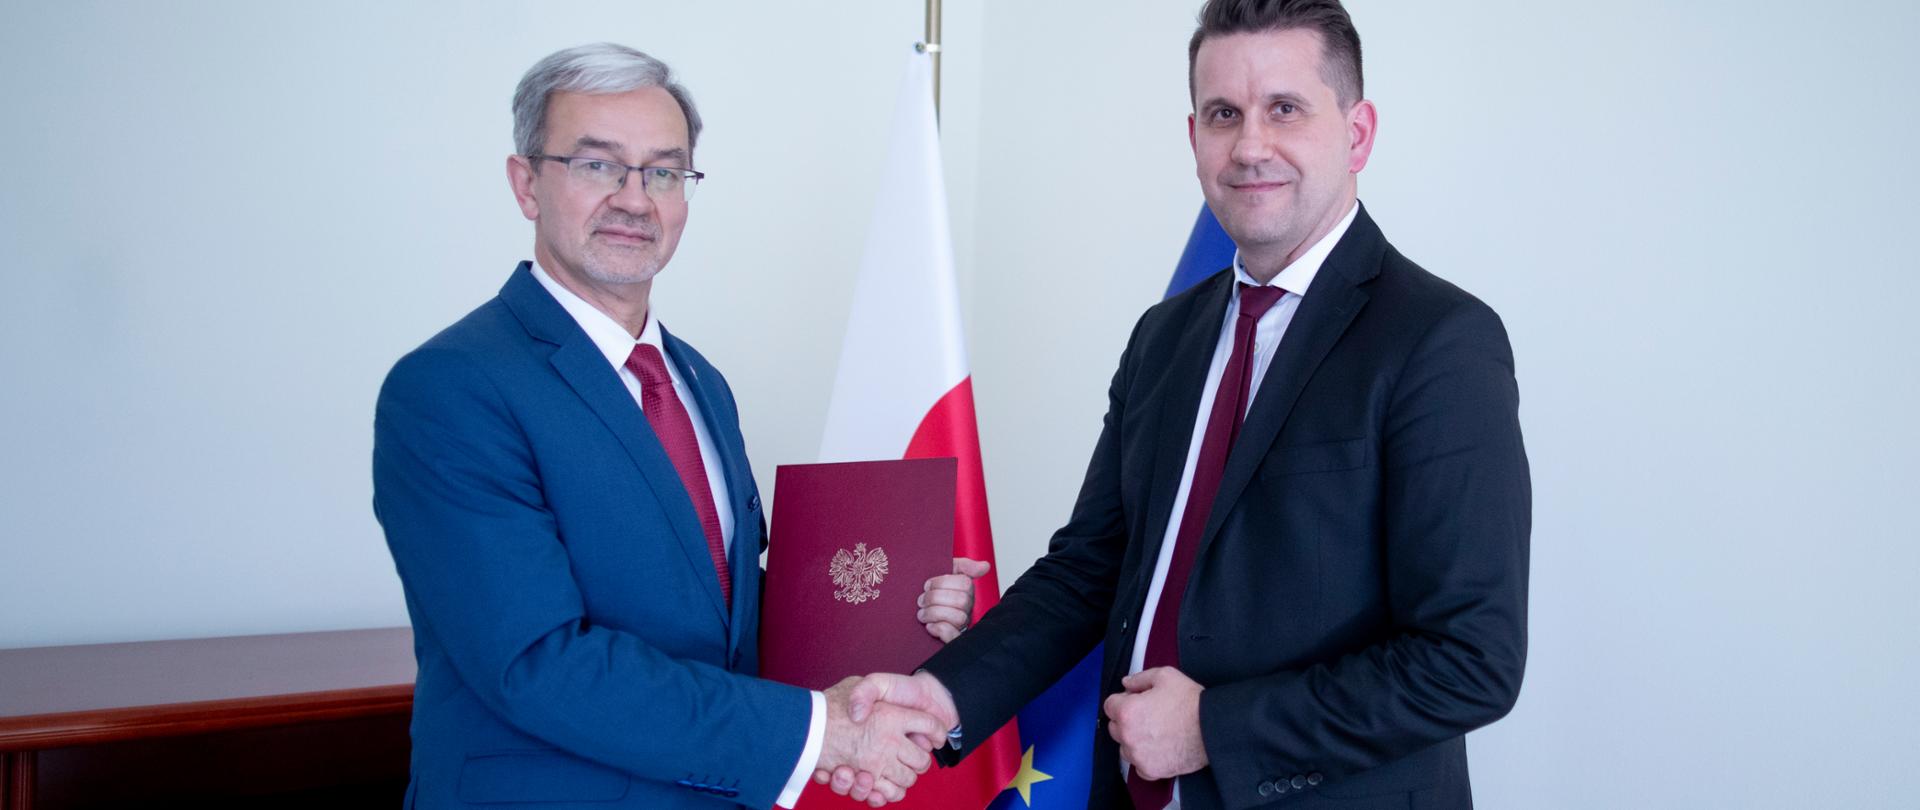 minister Jerzy Kwieciński i prezes Dominik Rozkrut ściskają prawe dłonie, między nimi widać teczkę z porozumieniem i flagi Polski i Unii Europejskiej